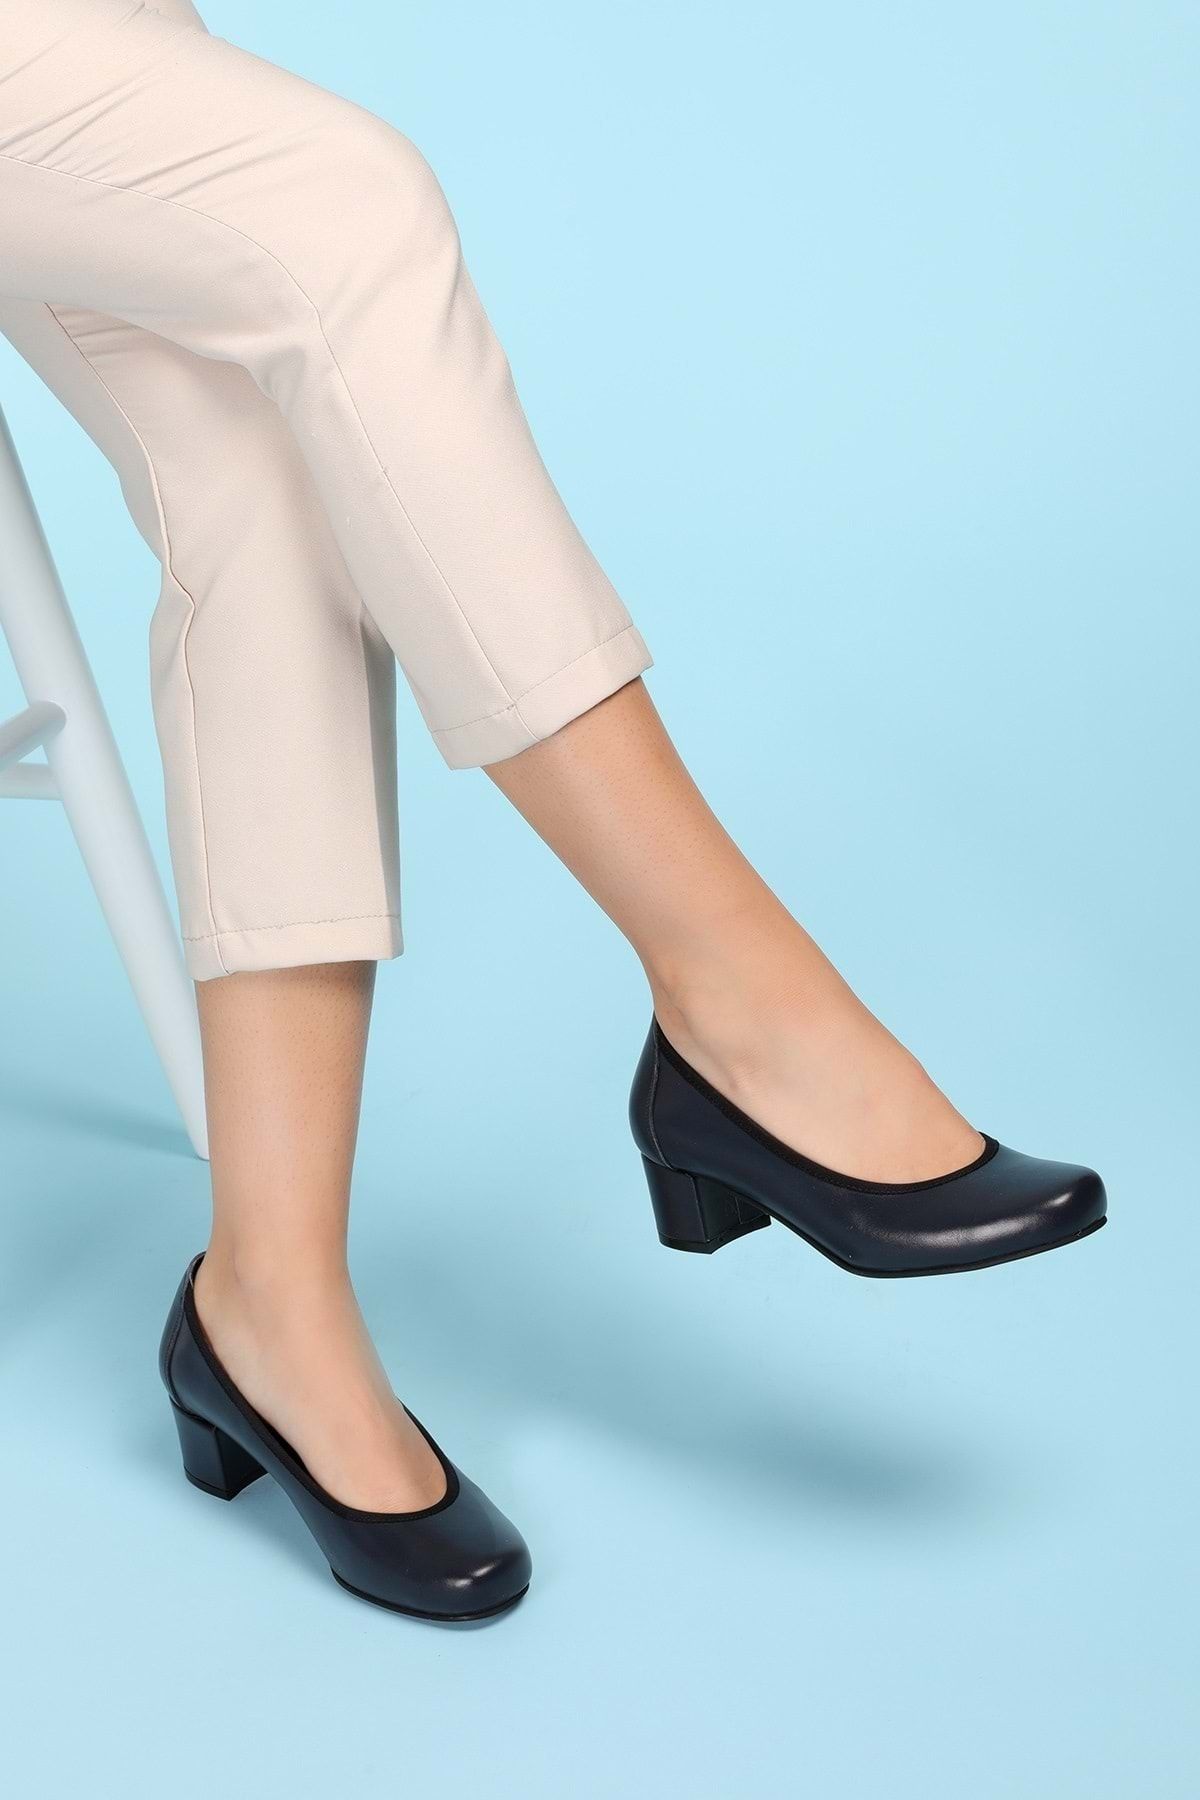 Gondol Kadın Hakiki Deri Rahat Günlük Topuklu Ayakkabı Şhn.280 - Lacivert - 35